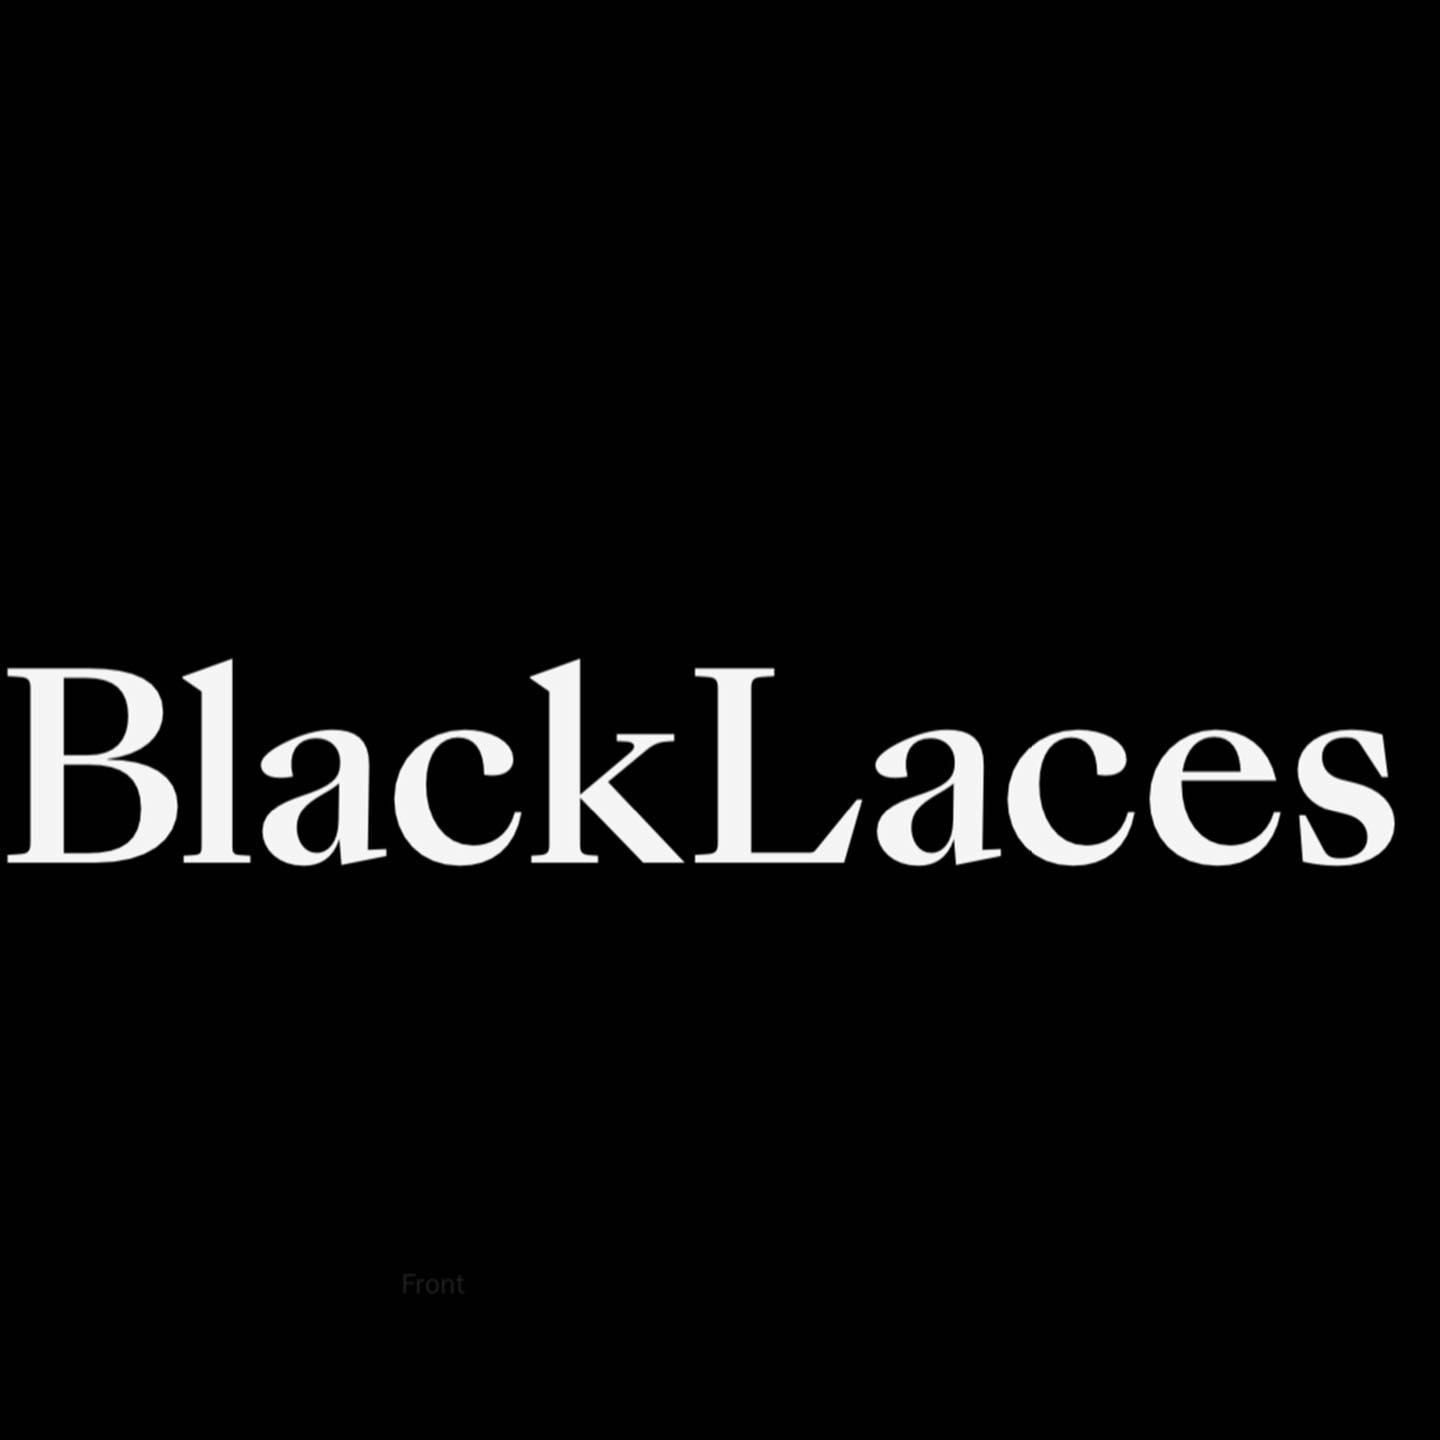 Blacklacesofficial, 1250 N La Brea ave, Los Angeles, 90038